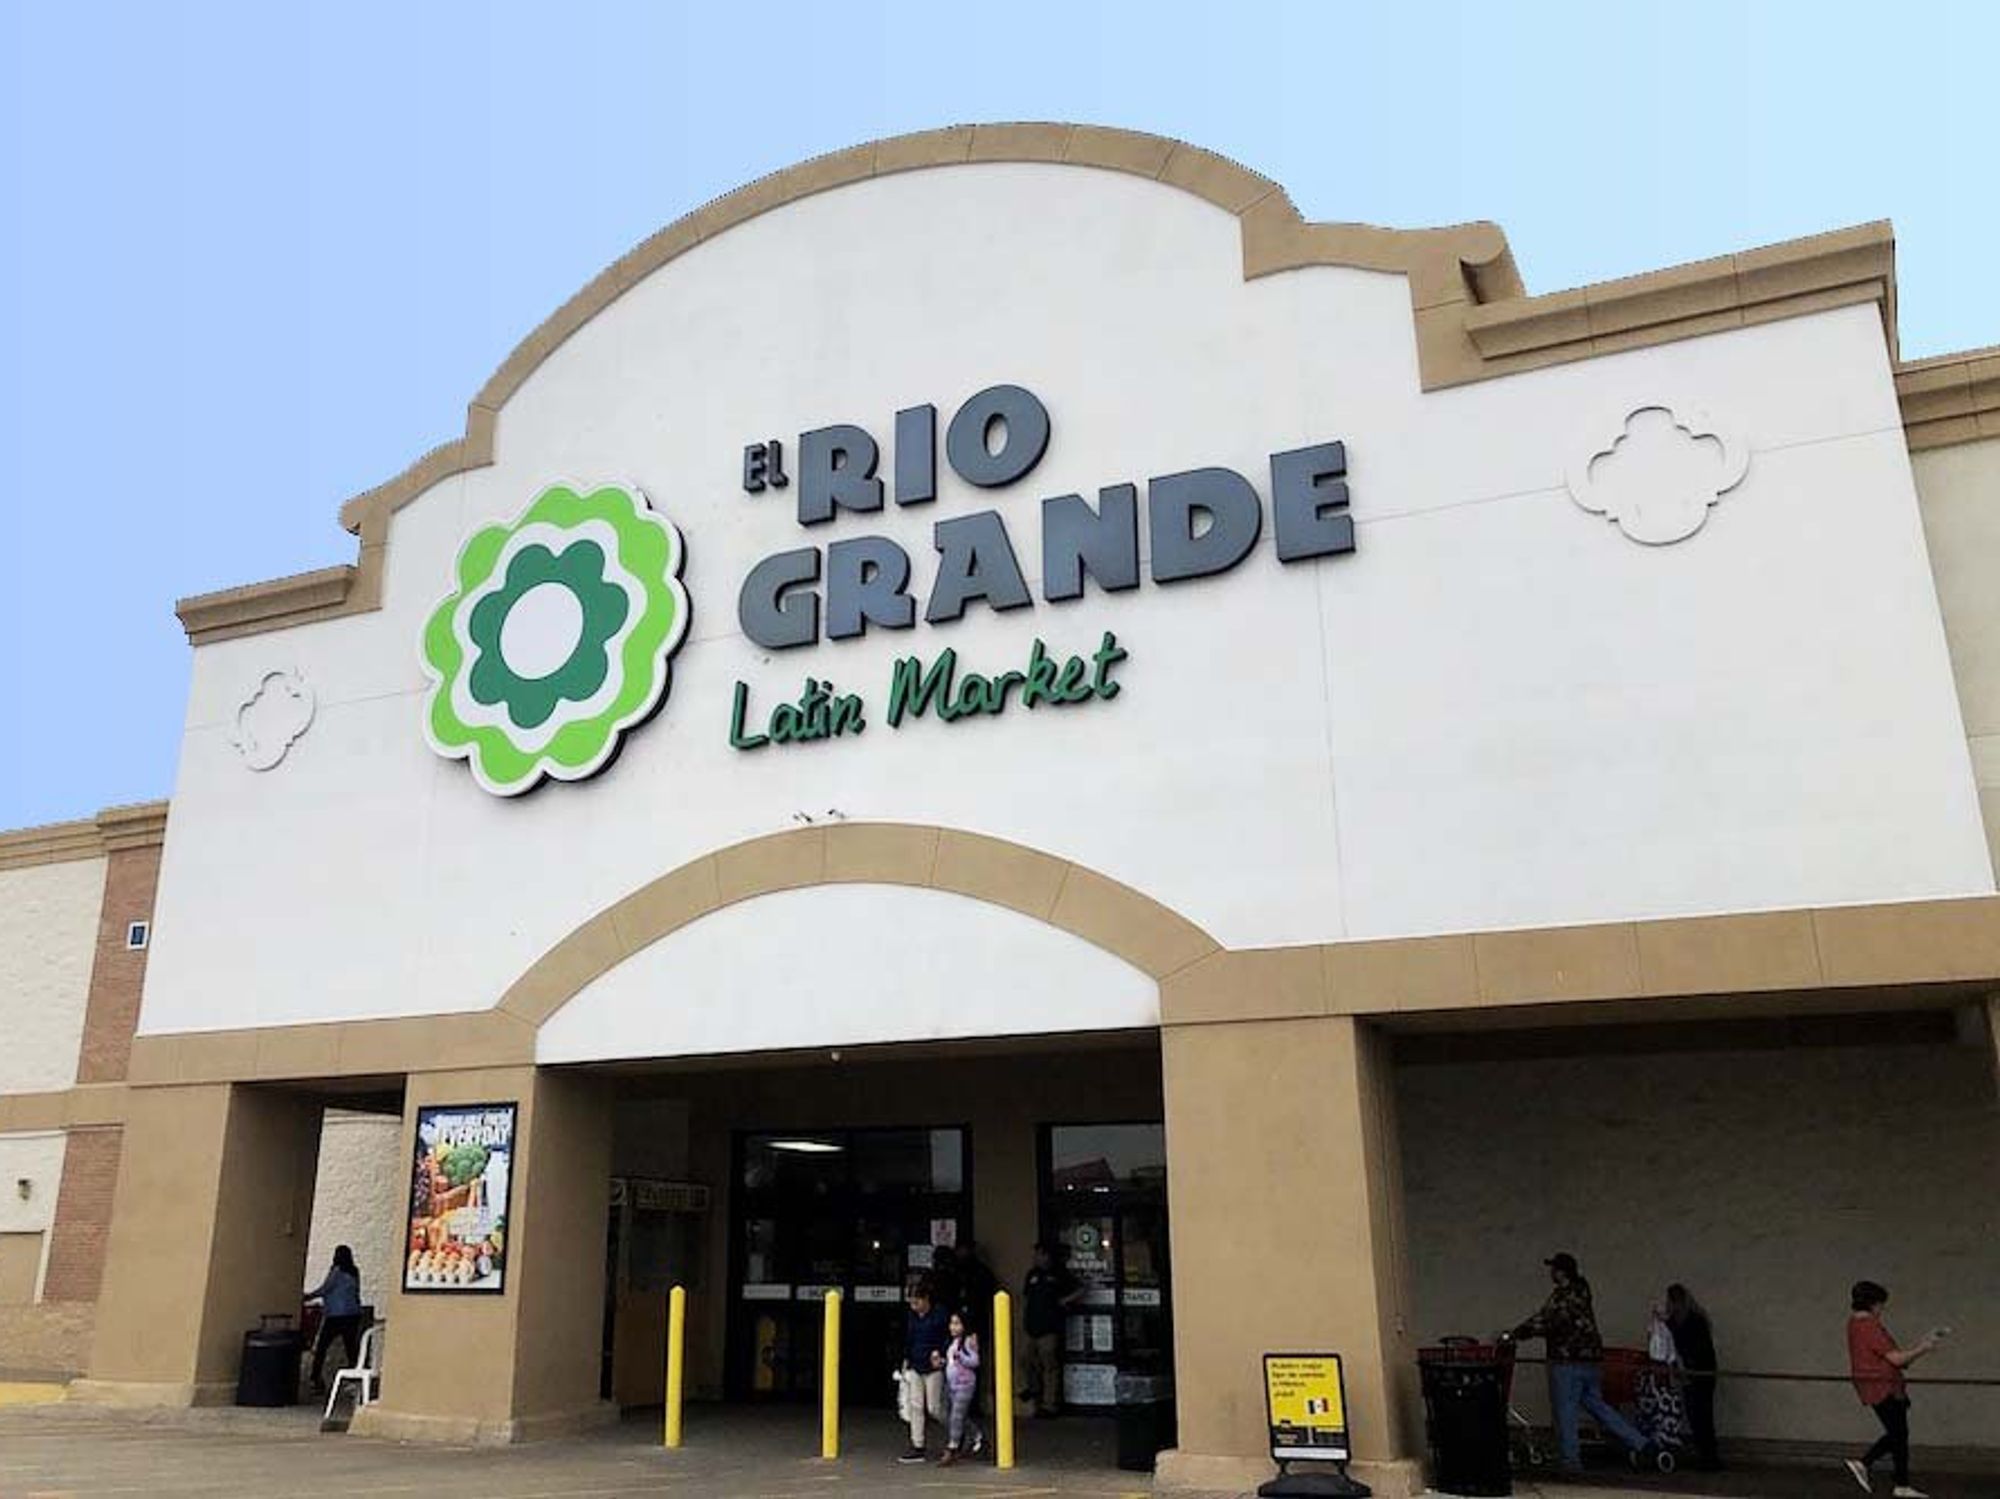 El Rio Grande Market